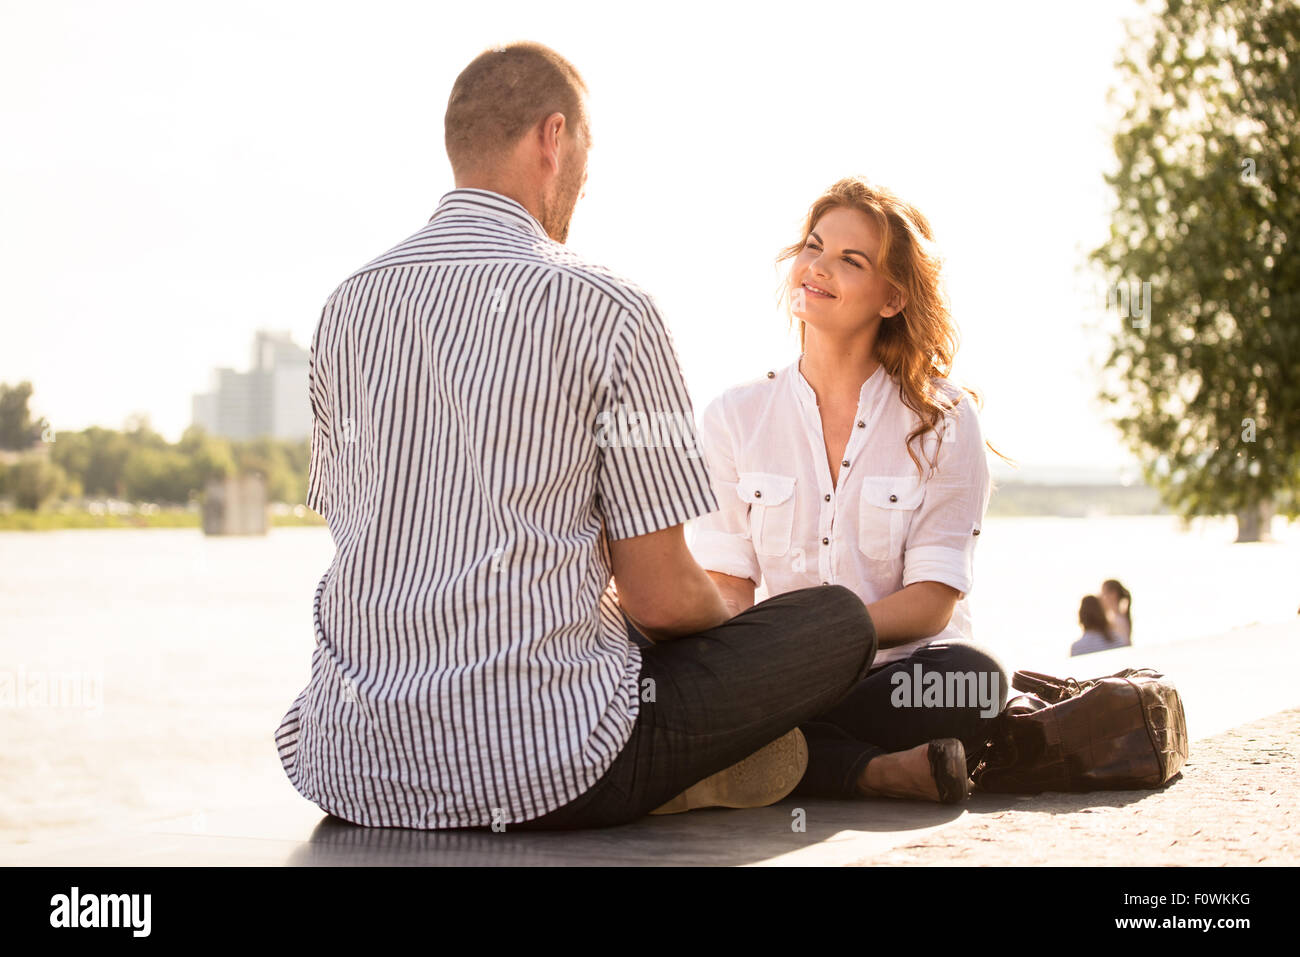 Junge Frau im Gespräch auf ein Date mit reifer Mann - sitzen im freien Stockfoto